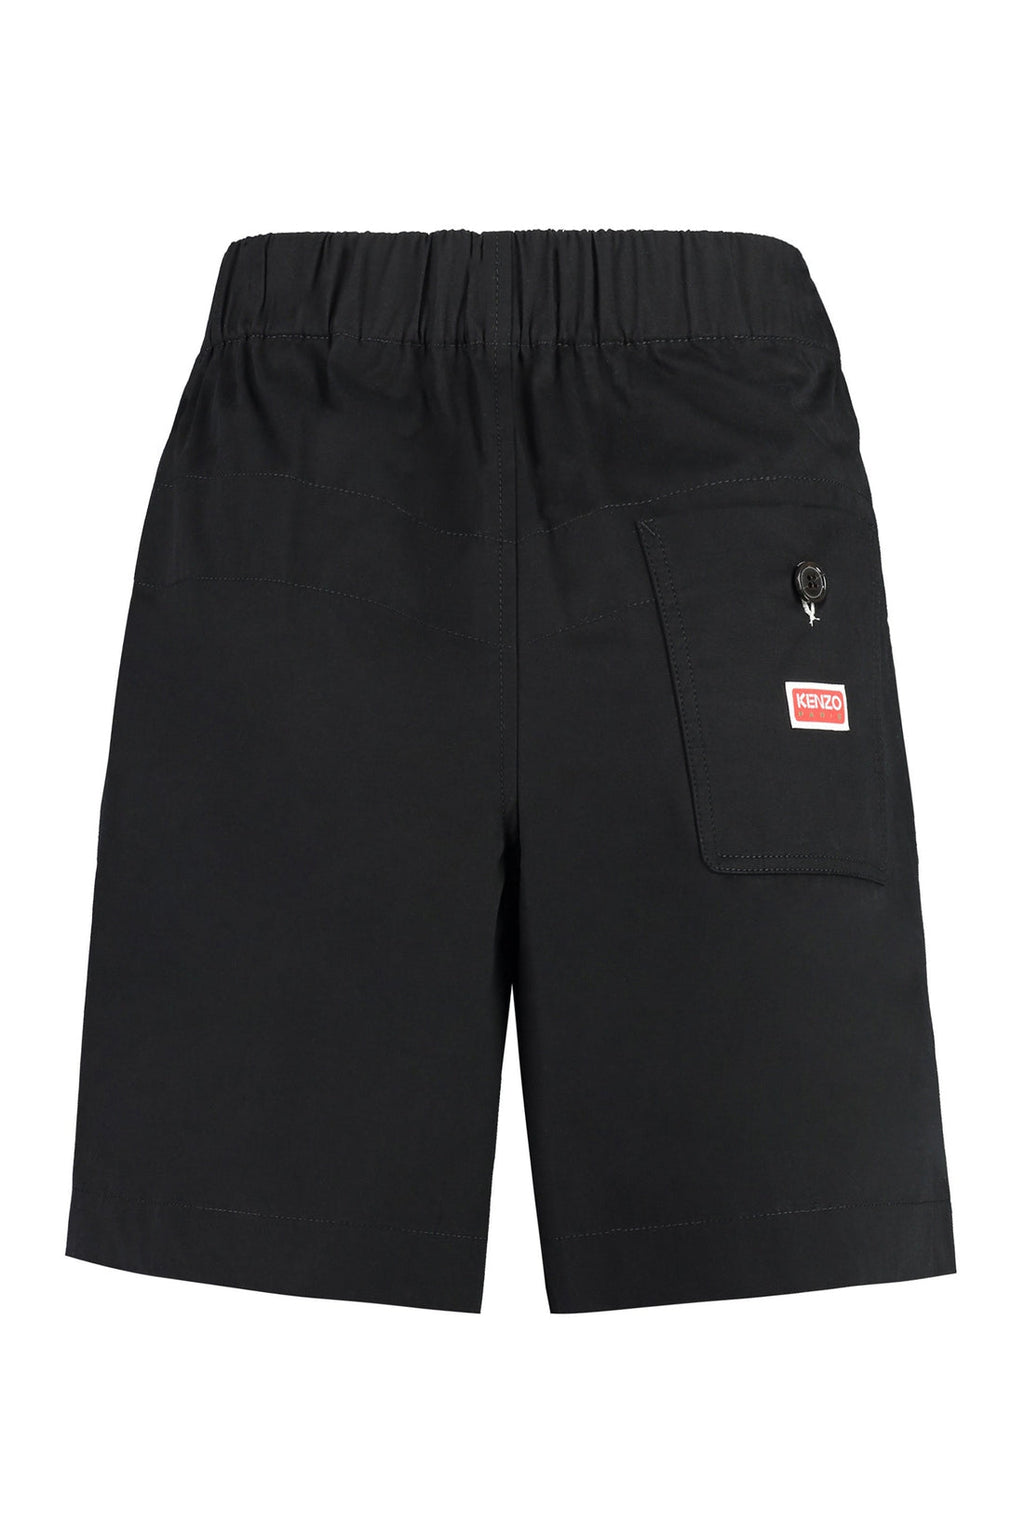 Kenzo-OUTLET-SALE-Cotton shorts-ARCHIVIST